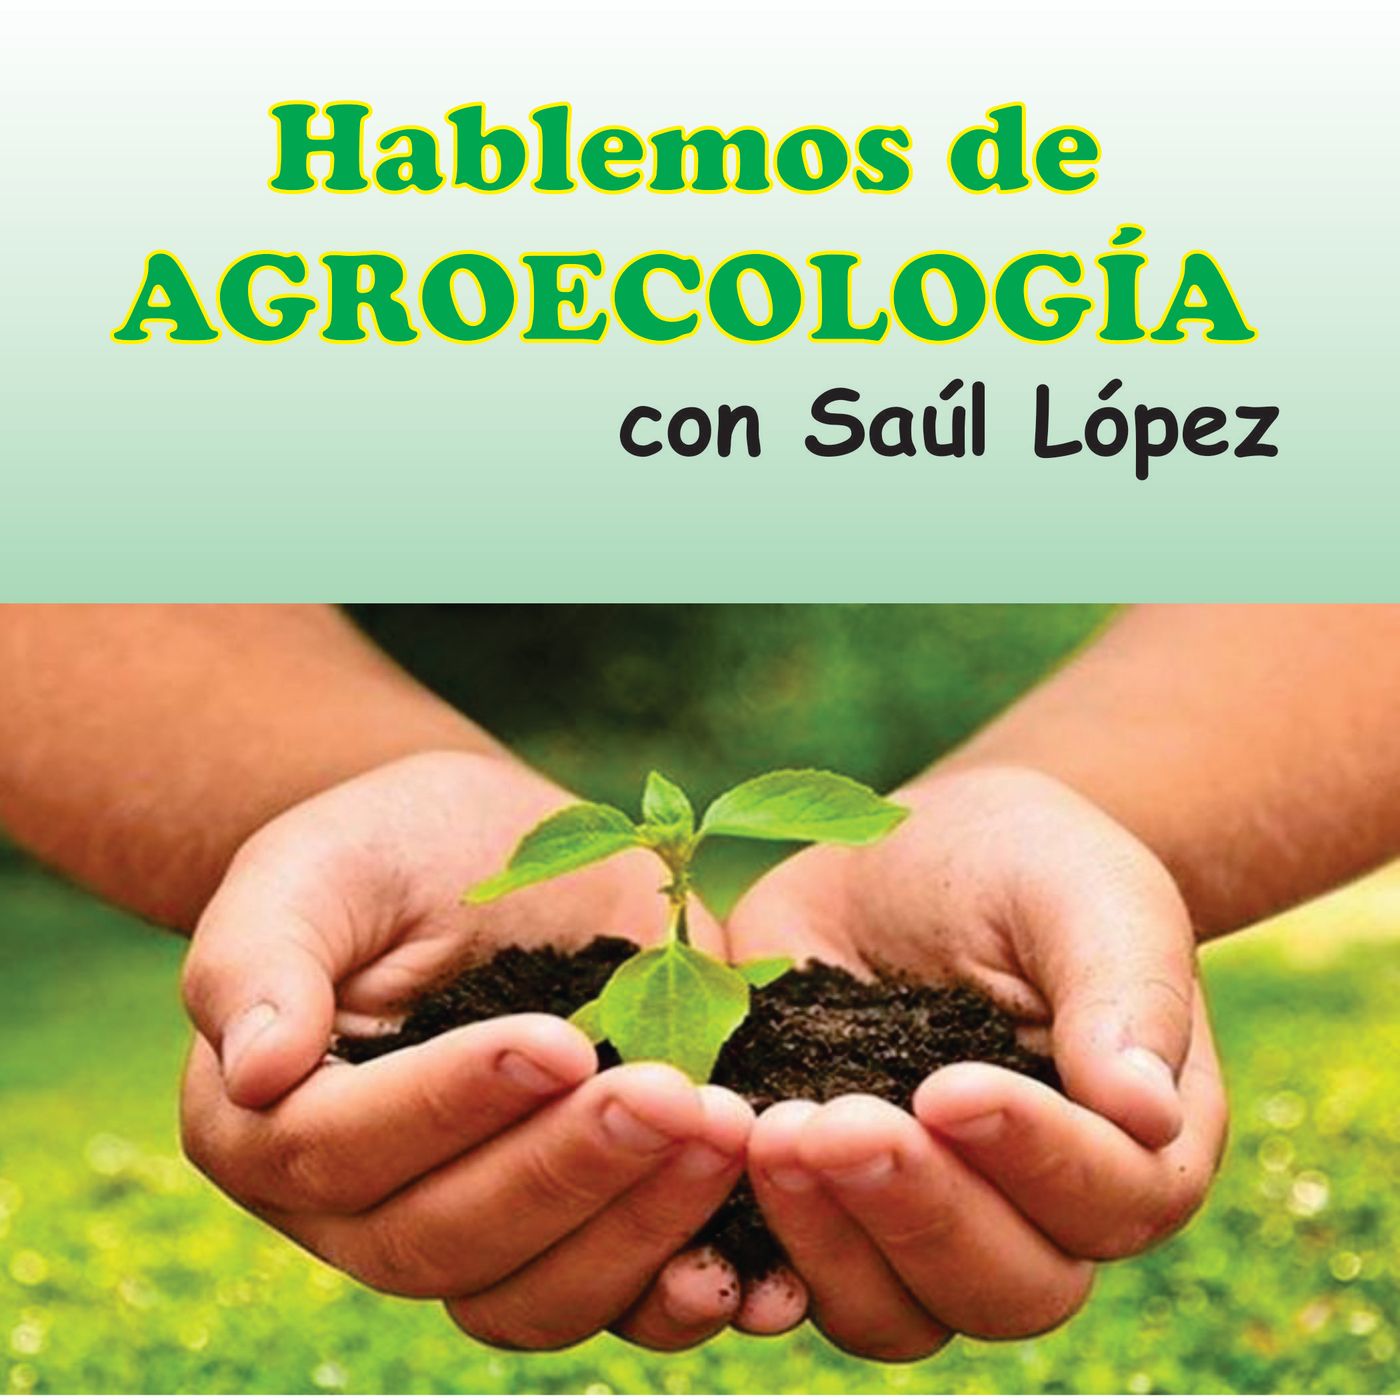 Hablemos de agroecología